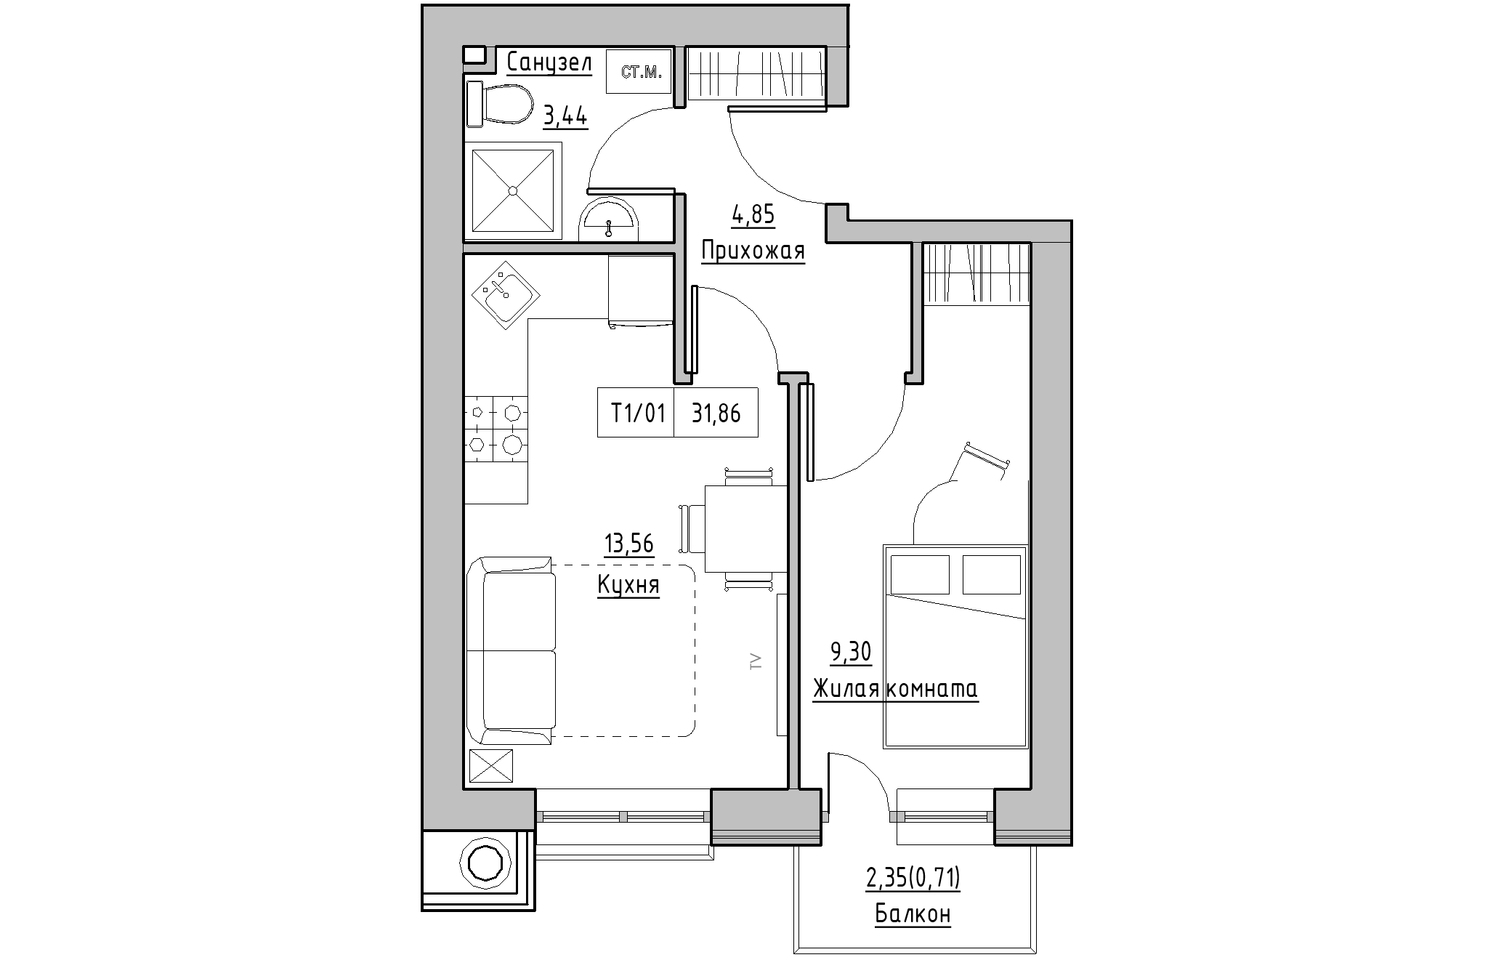 Планування 1-к квартира площею 31.86м2, KS-010-03/0003.